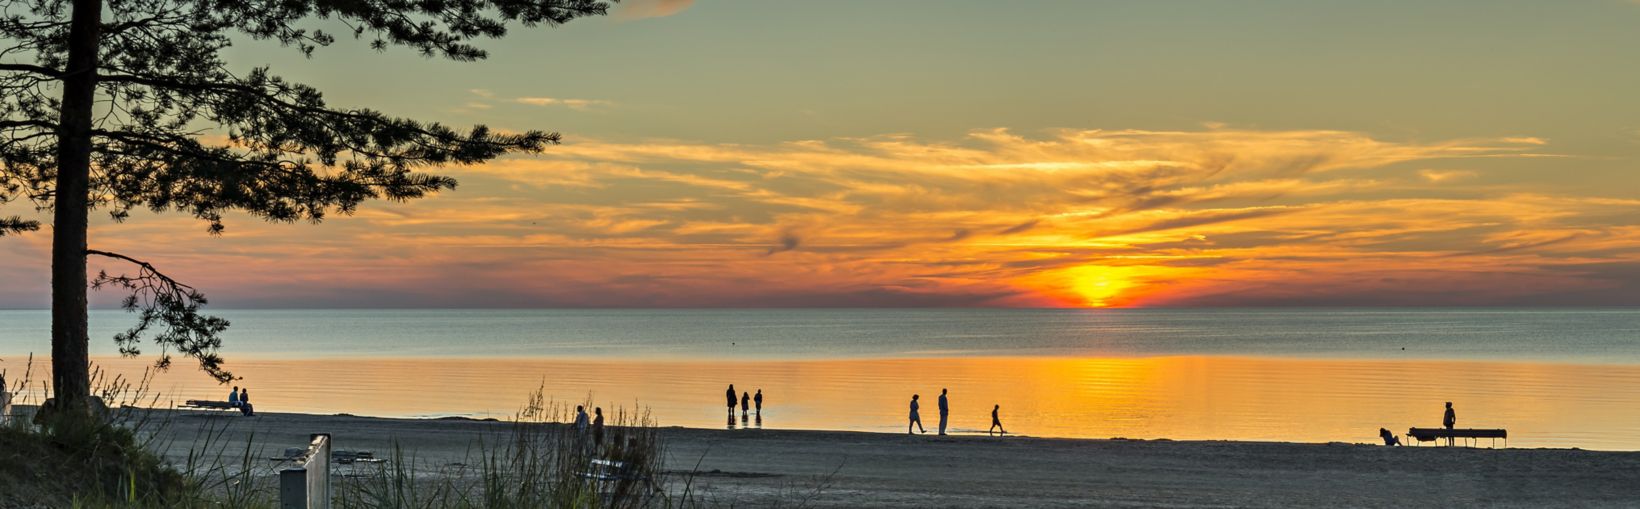 Coucher de soleil coloré sur la plage de sable de Jurmala, célèbre station balnéaire de la mer Baltique, en Lettonie